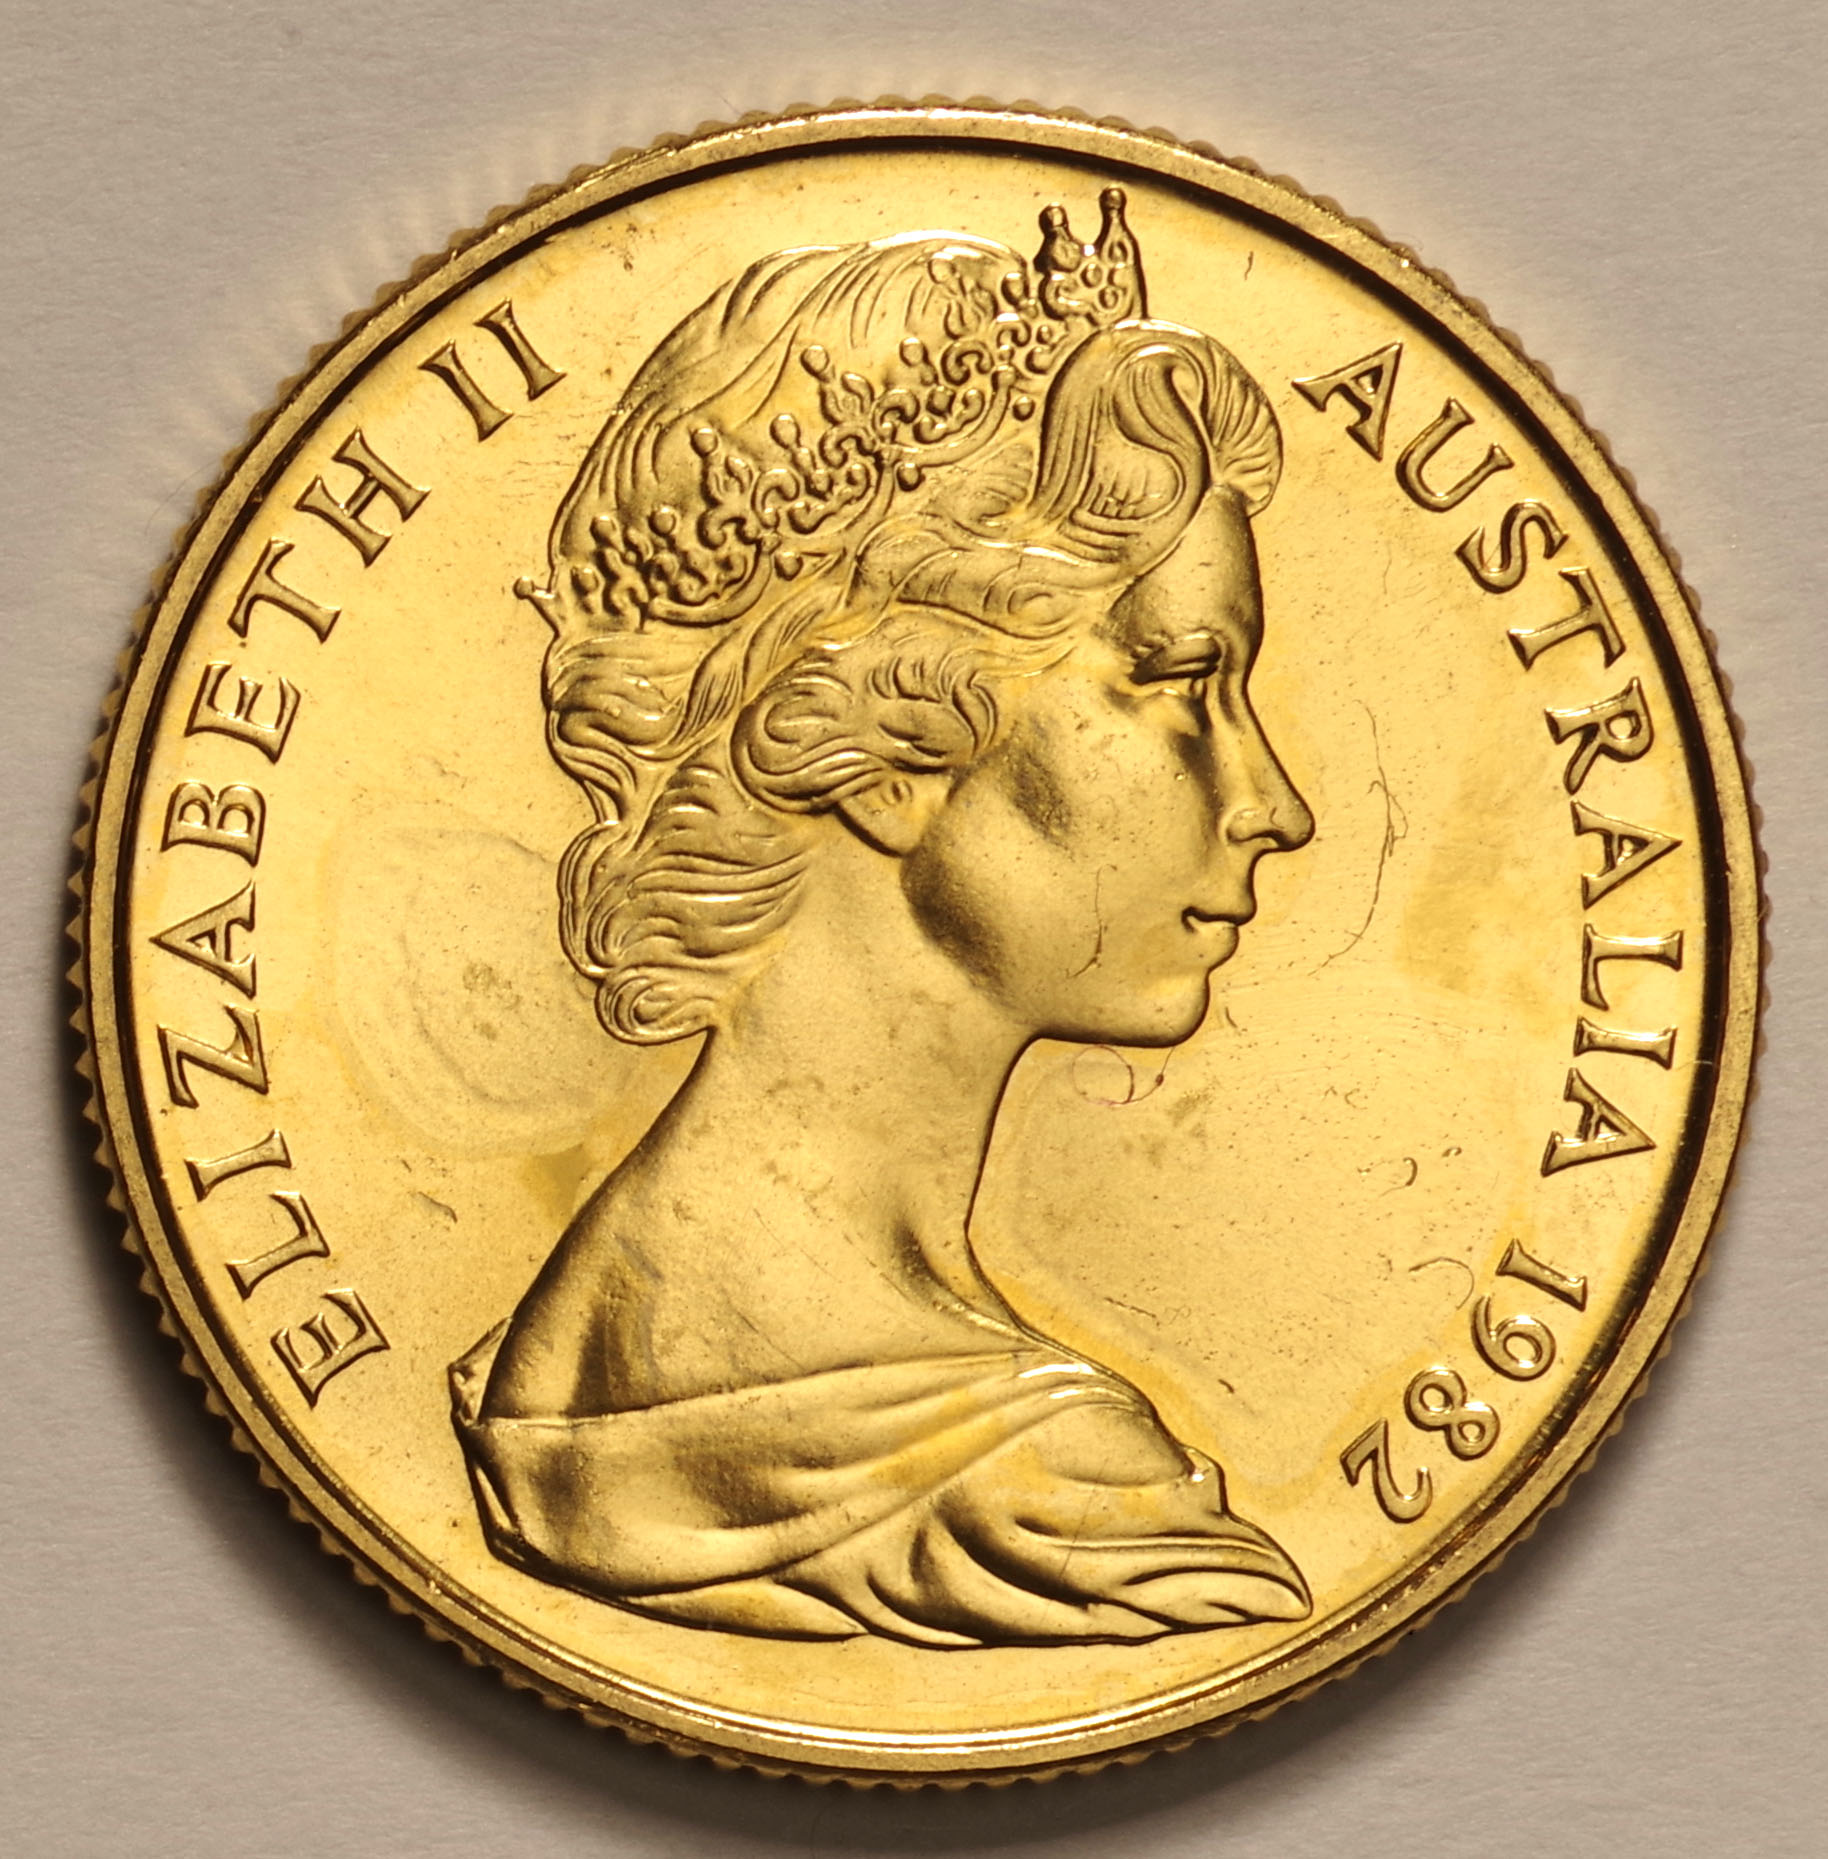 オーストラリア 硬貨 1ドル 2セント 青銅貨 エリザベス二世 メダル